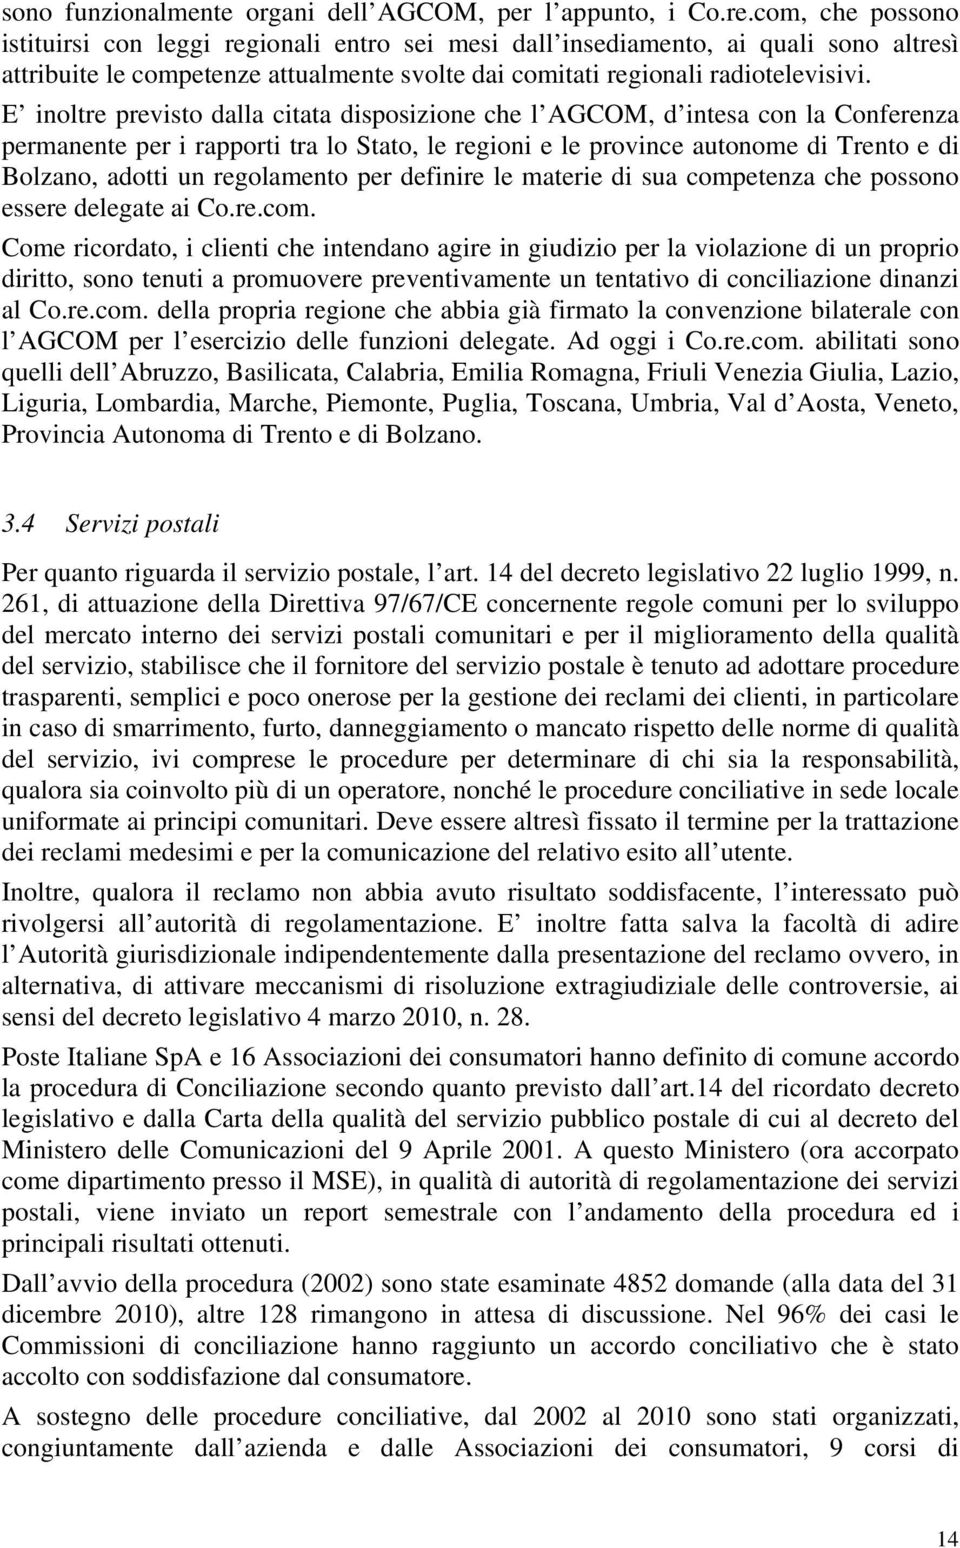 E inoltre previsto dalla citata disposizione che l AGCOM, d intesa con la Conferenza permanente per i rapporti tra lo Stato, le regioni e le province autonome di Trento e di Bolzano, adotti un